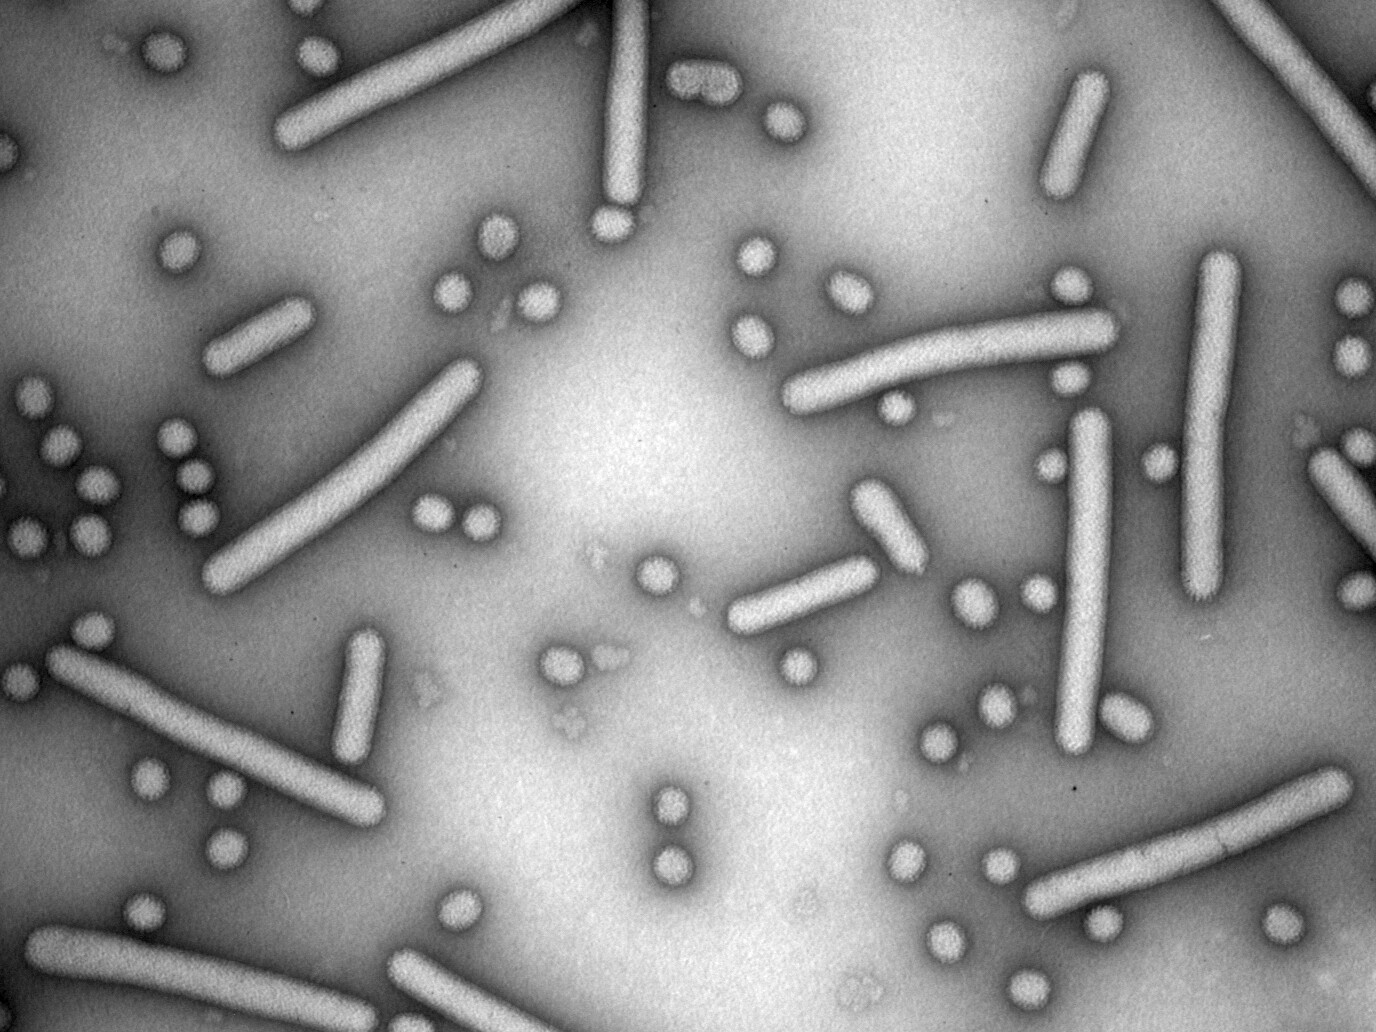 Elektronenmikroskopische Aufnahme des Jonchet-Virus. „Jonchet“ bedeutet auf Französisch Stäbchen. © Marco Marklewitz/UKB